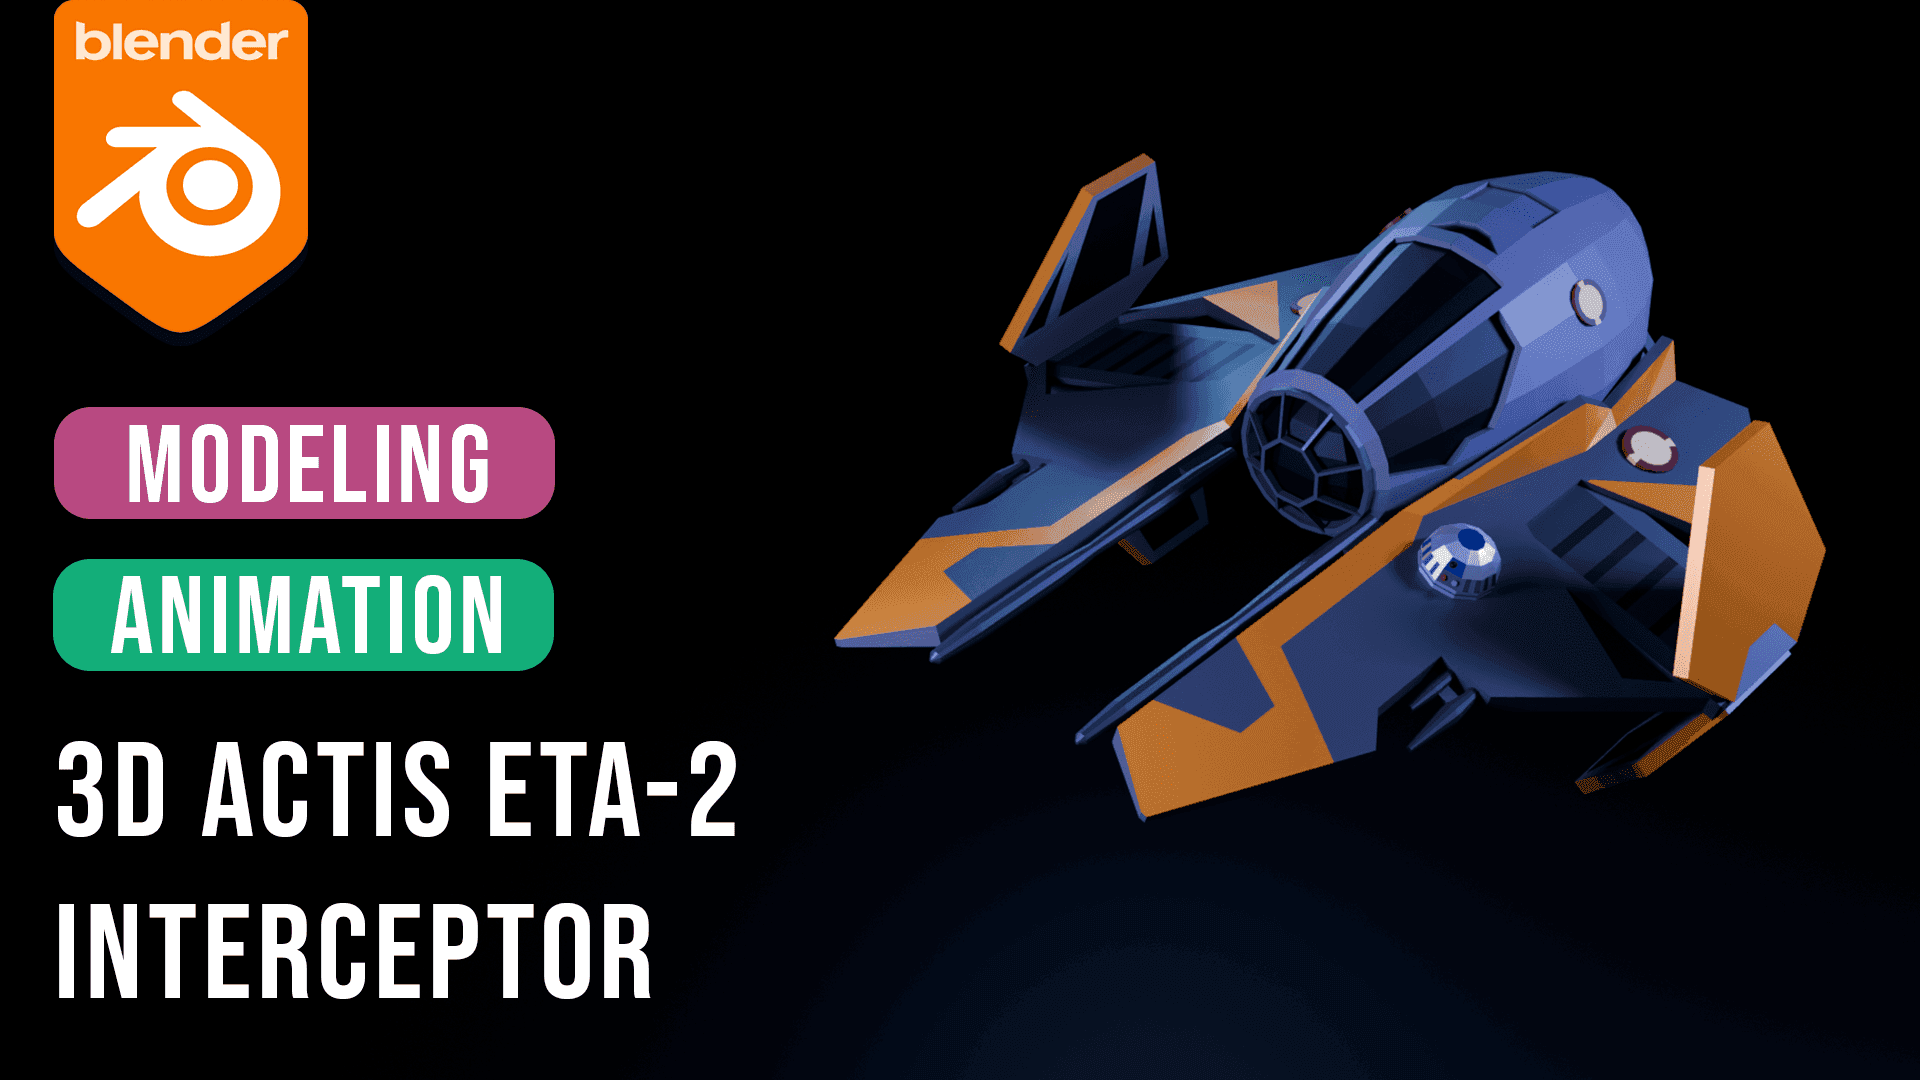 Actis Eta-2 Interceptor